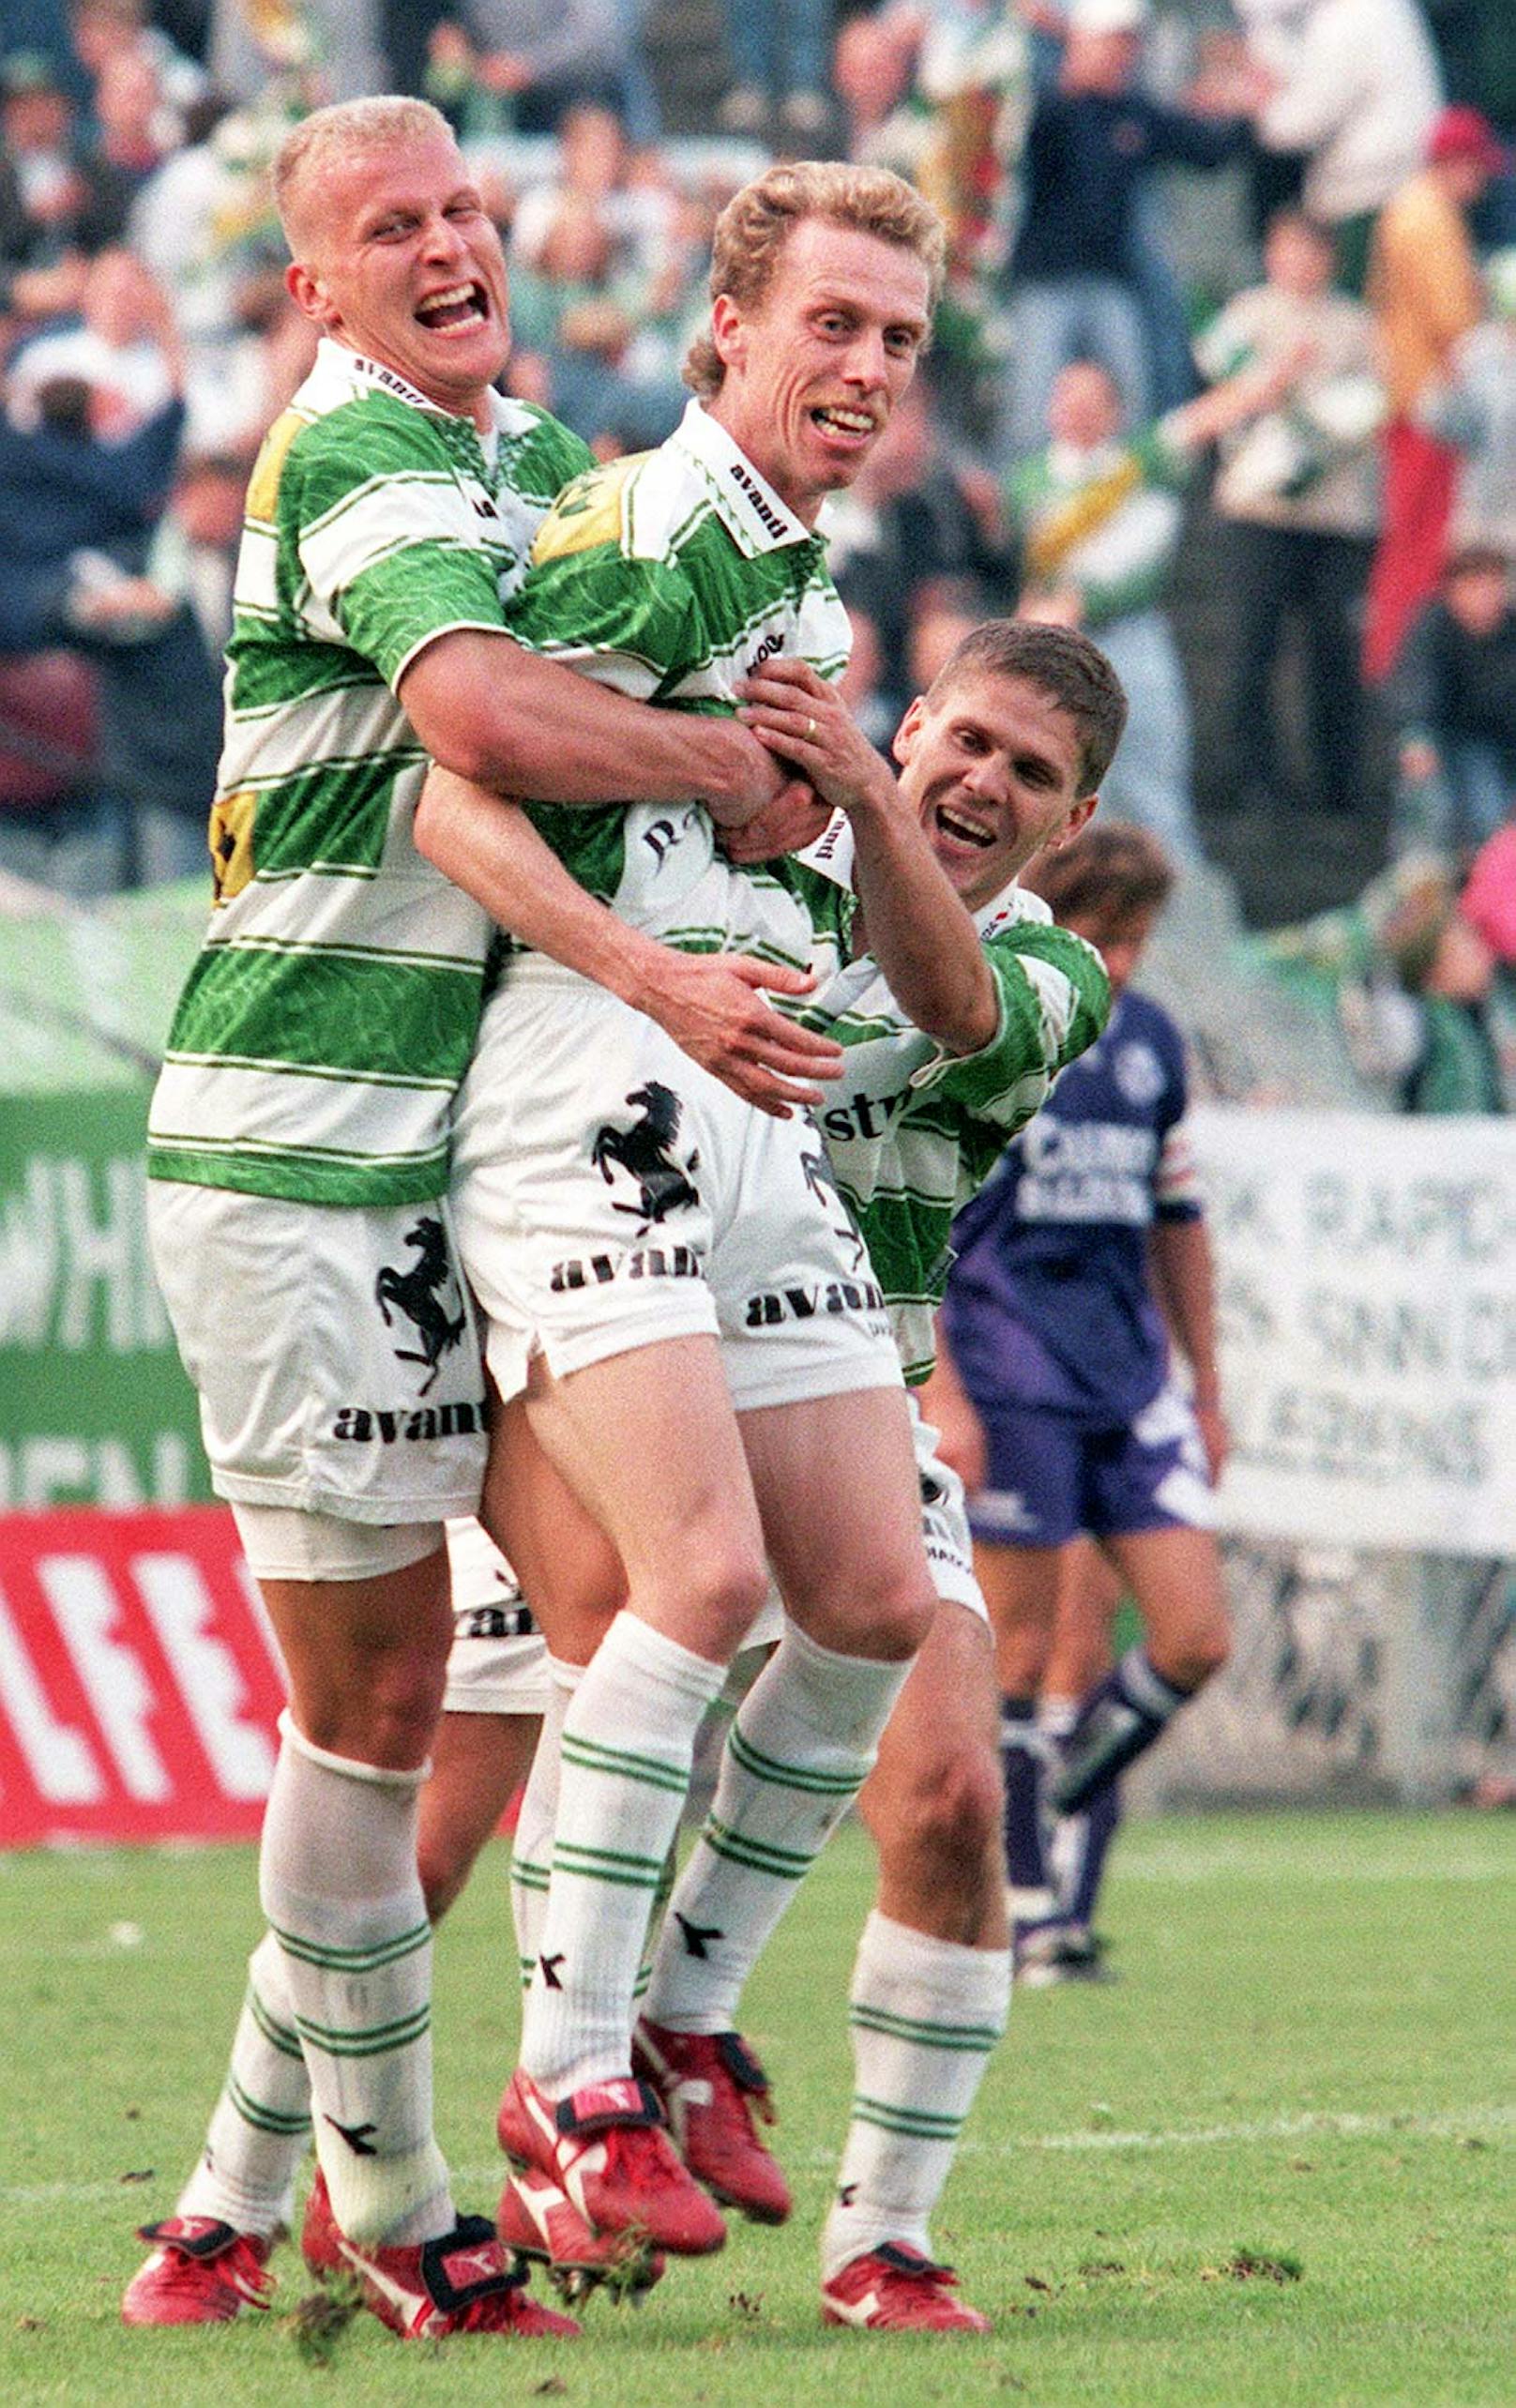 <strong>Carsten Jancker:</strong>&nbsp;Absolvierte nur 27 Liga-Spiele (7 Tore) für Rapid, doch die reichten, um für immer mit dem Klub verbunden zu sein. Vor allem seine sechs Treffer am Weg ins Europacup-Finale hinterließen Eindruck. Krönte sein Rapid-Jahr mit dem Meistertitel (1995/96).